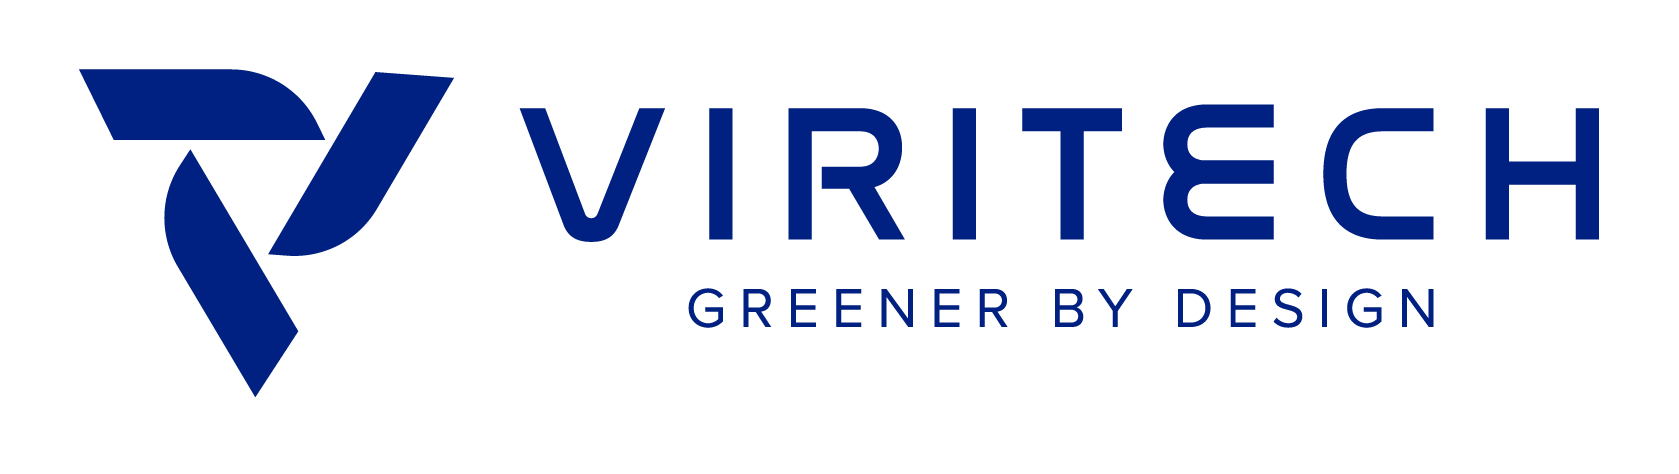 viritech_logo.png